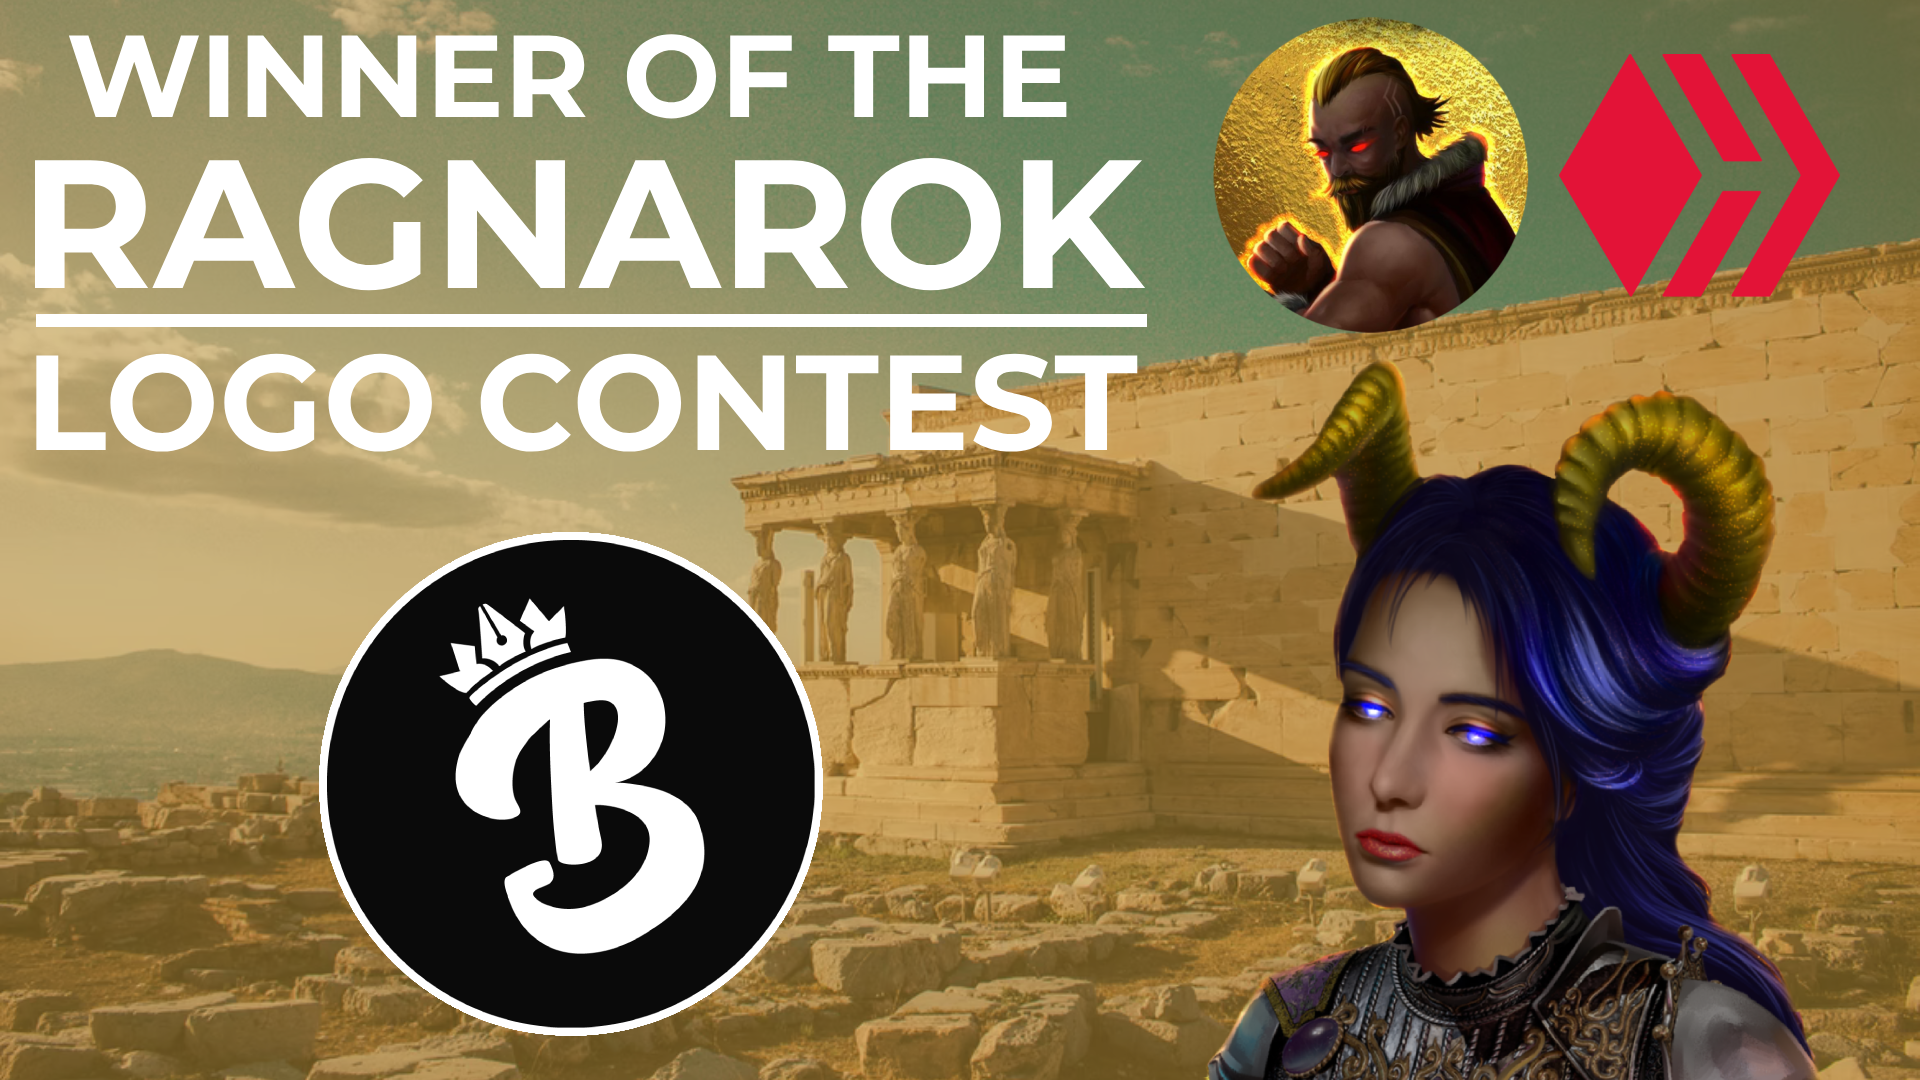 @ragnarok.game/ragnarok-logo-contest-winner